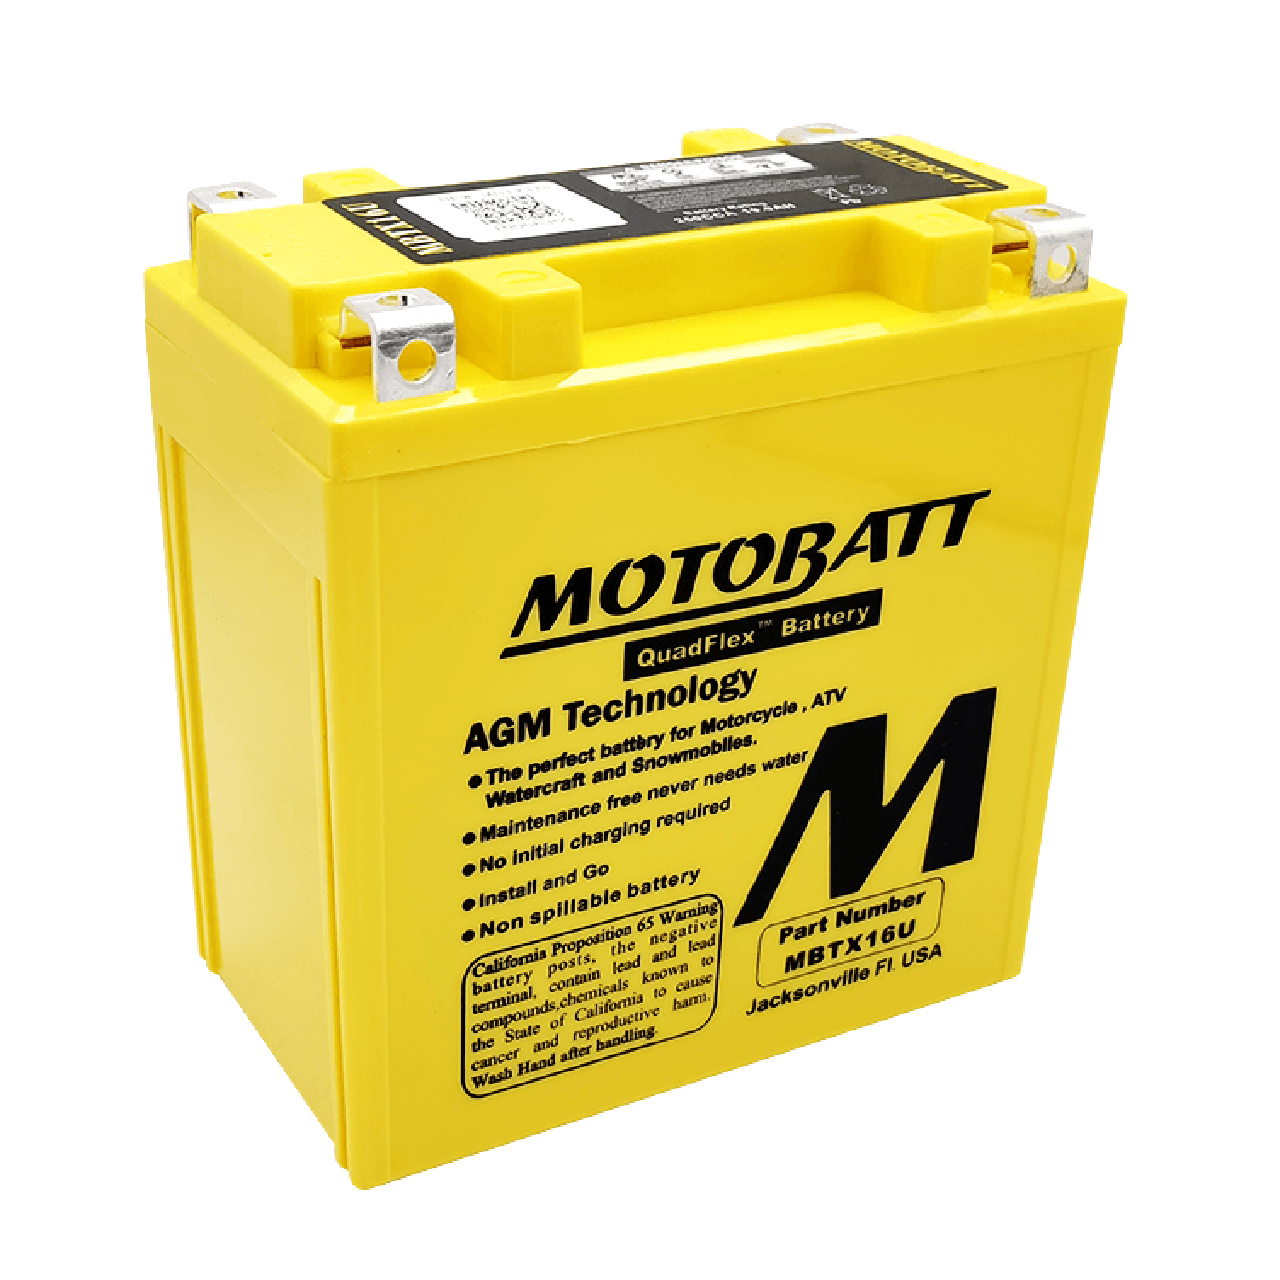 【MOTOBATT】AGM 強效電池 MBTX16U 總代理公司貨